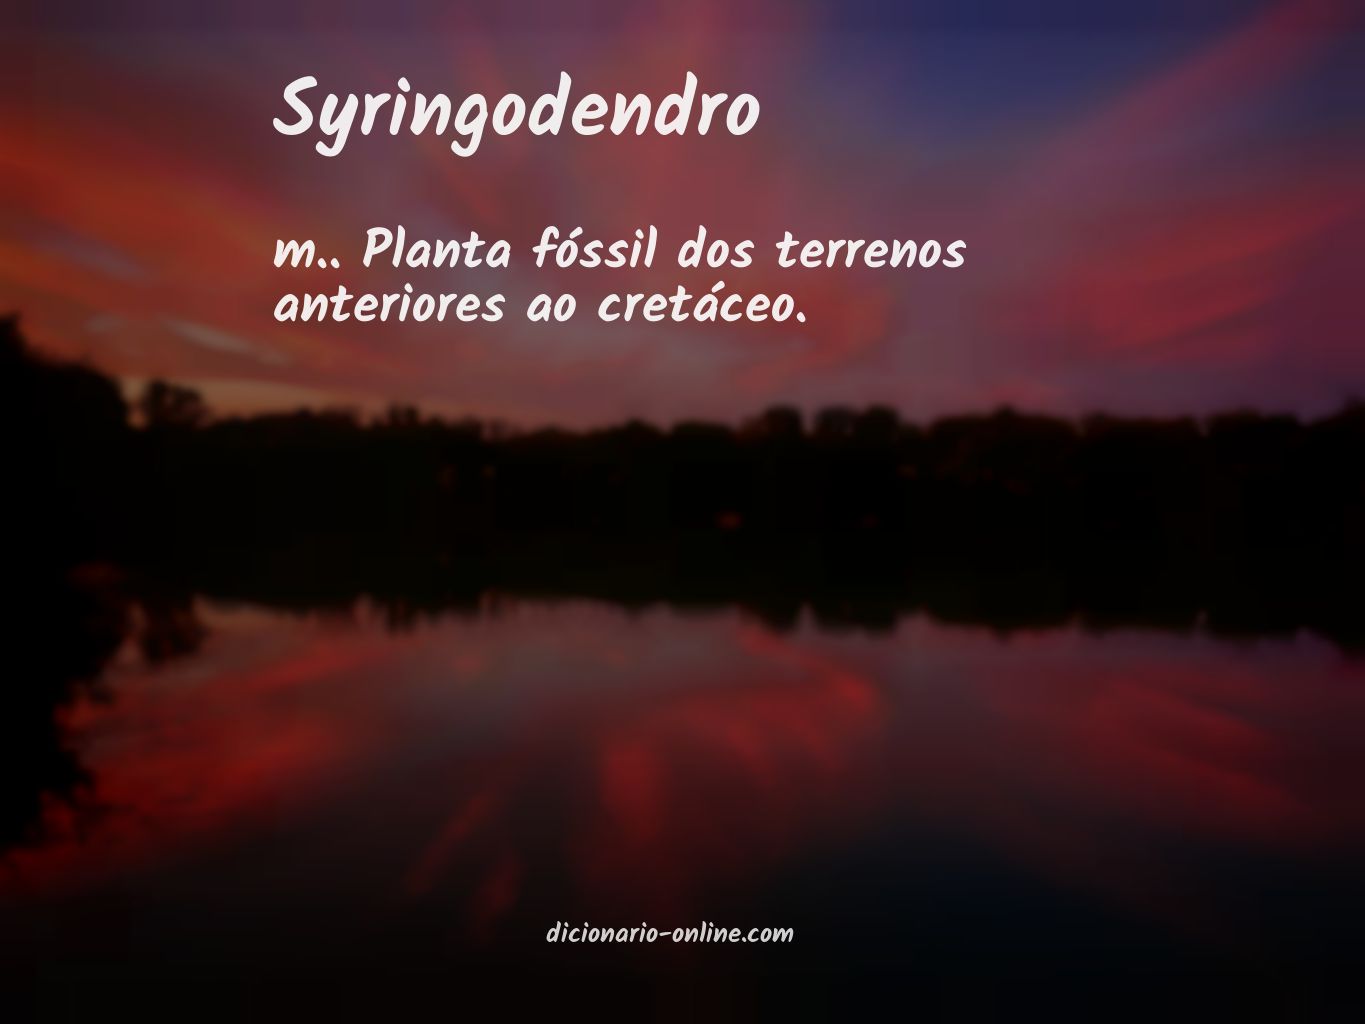 Significado de syringodendro